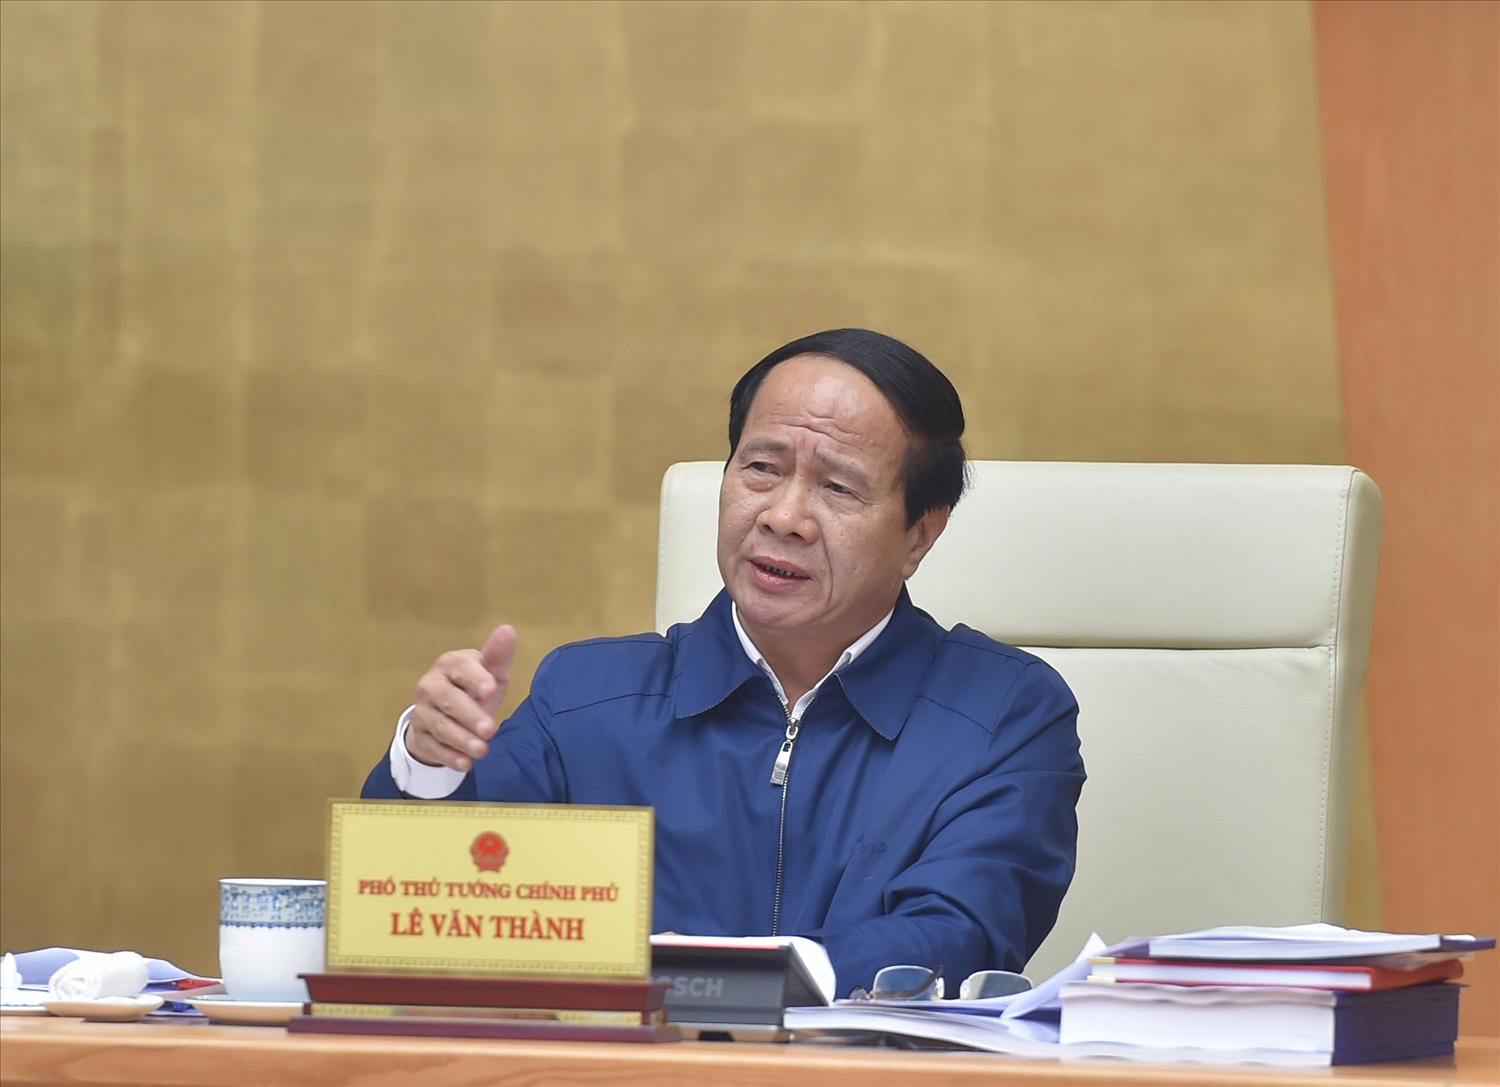 Phó Thủ tướng Lê Văn Thành: Hệ thống hạ tầng giao thông của ĐBSCL sẽ có bước phát triển đột phá, vượt bậc - Ảnh: VGP/Đức Tuân